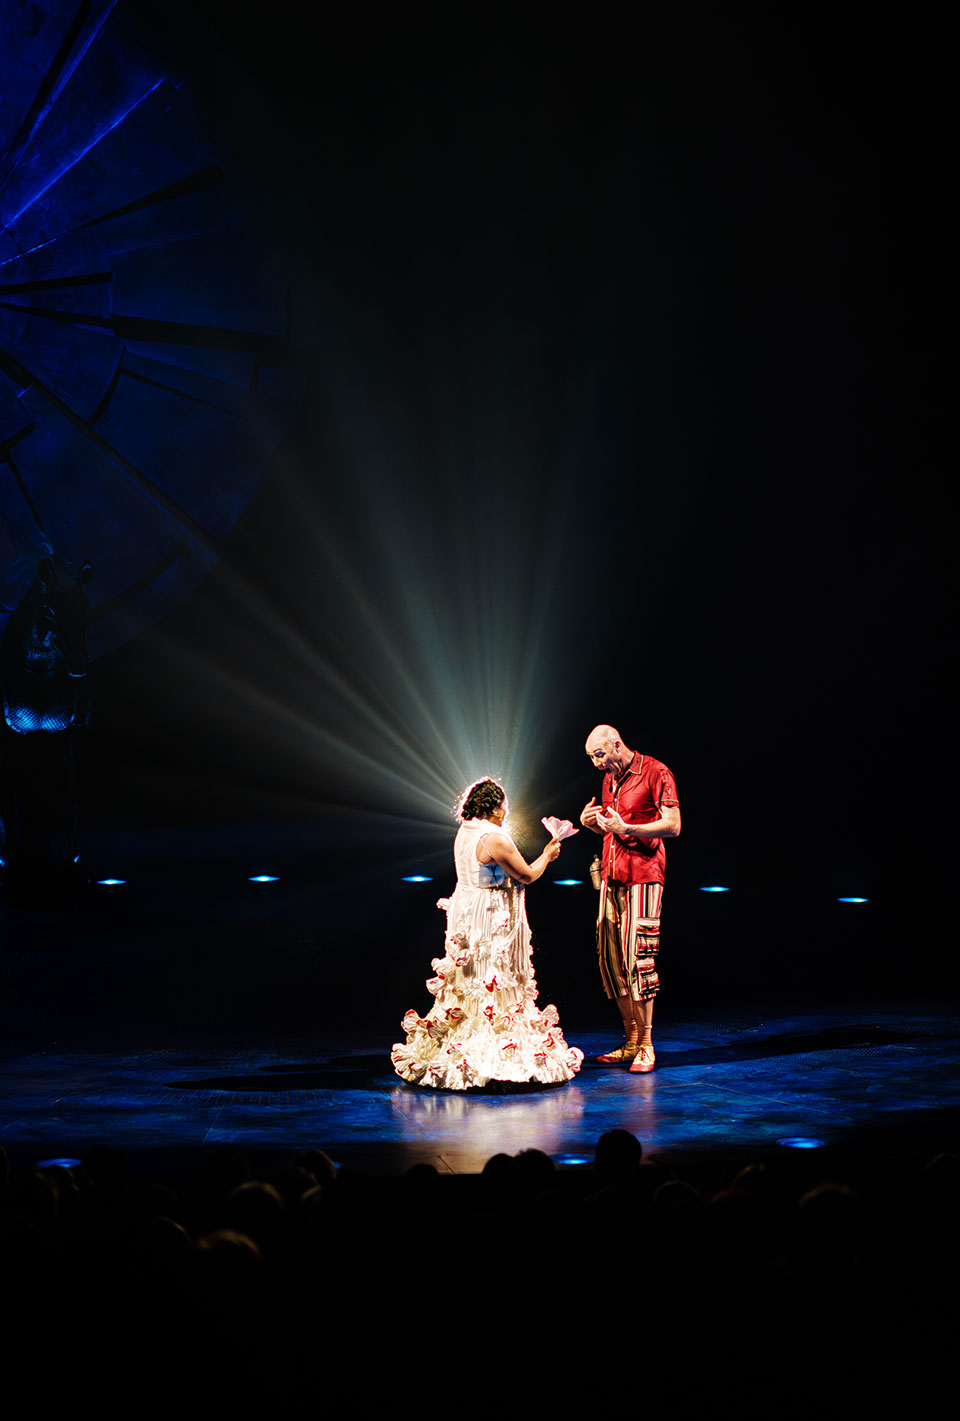 Zwei Schauspieler auf einer Bühne, eine Frau im weißen Kleid mit Blumenmustern und ein Mann in einem bunten Kostüm, im Hintergrund strahlenförmige Lichteffekte.